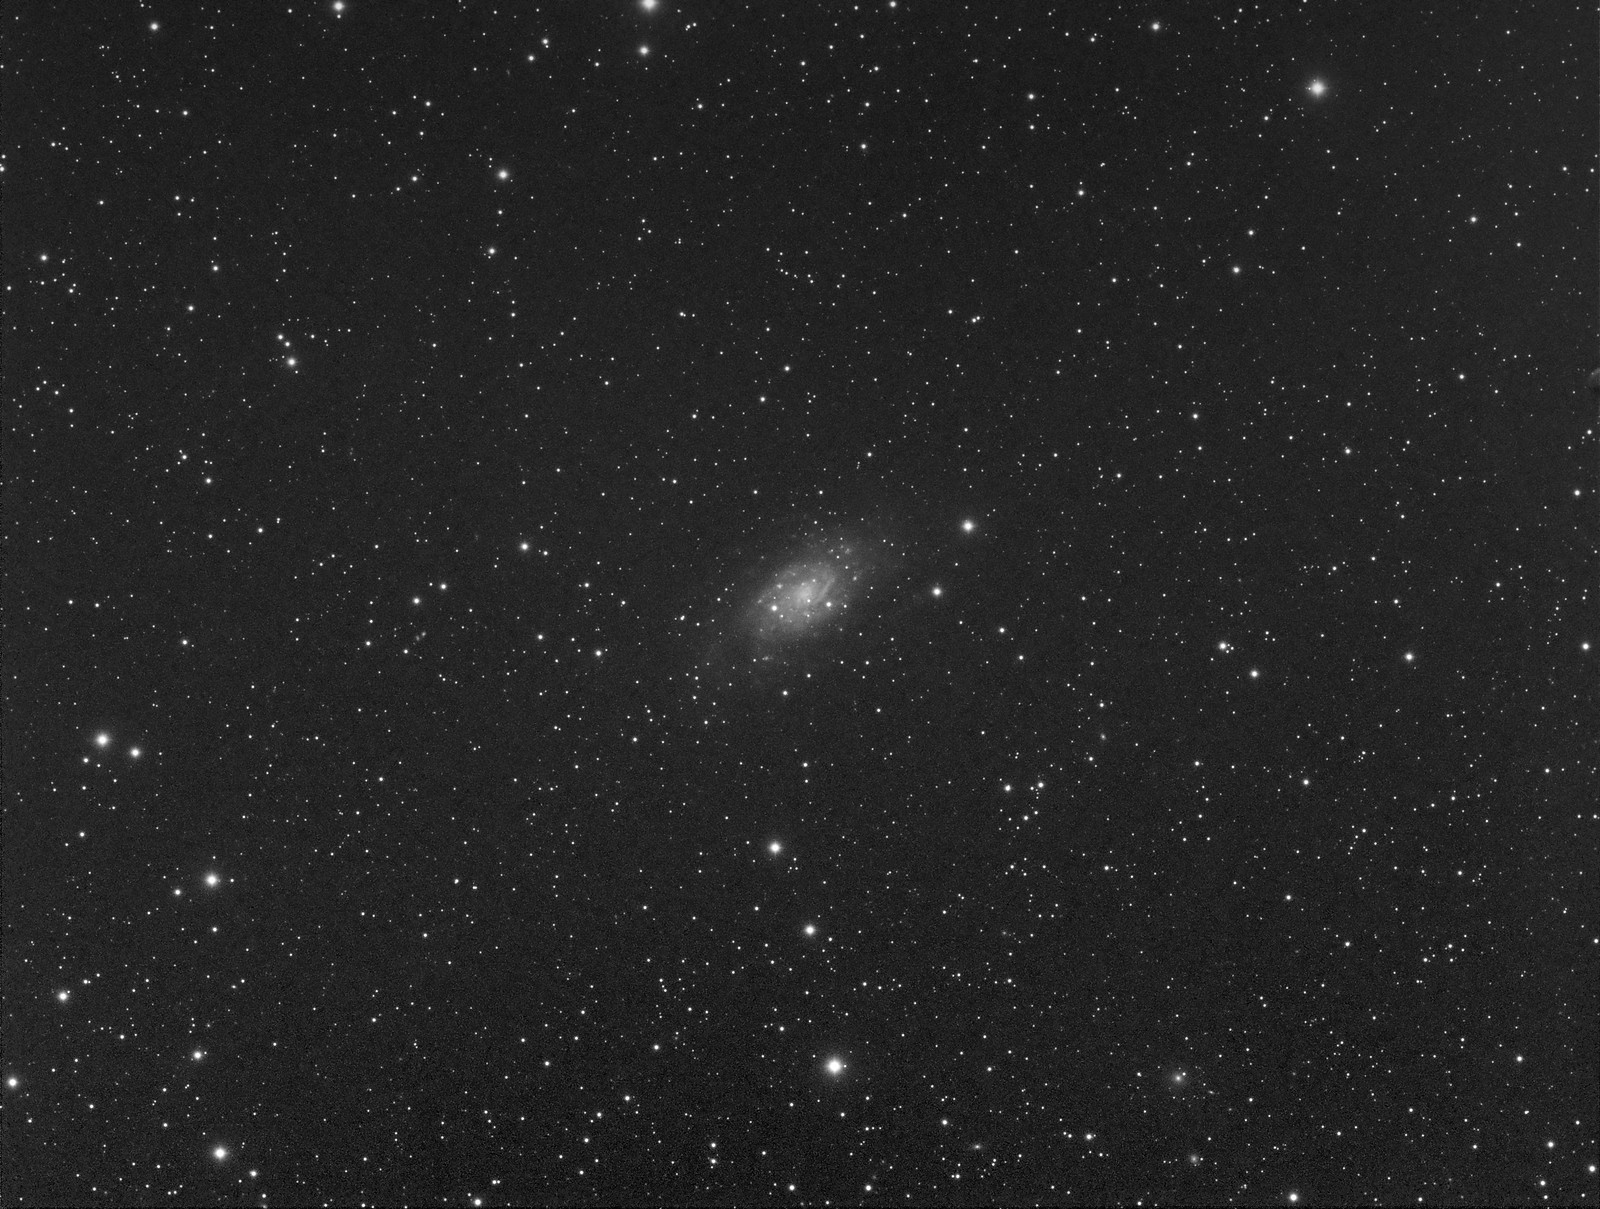 007 - NGC 2403 - Luminance